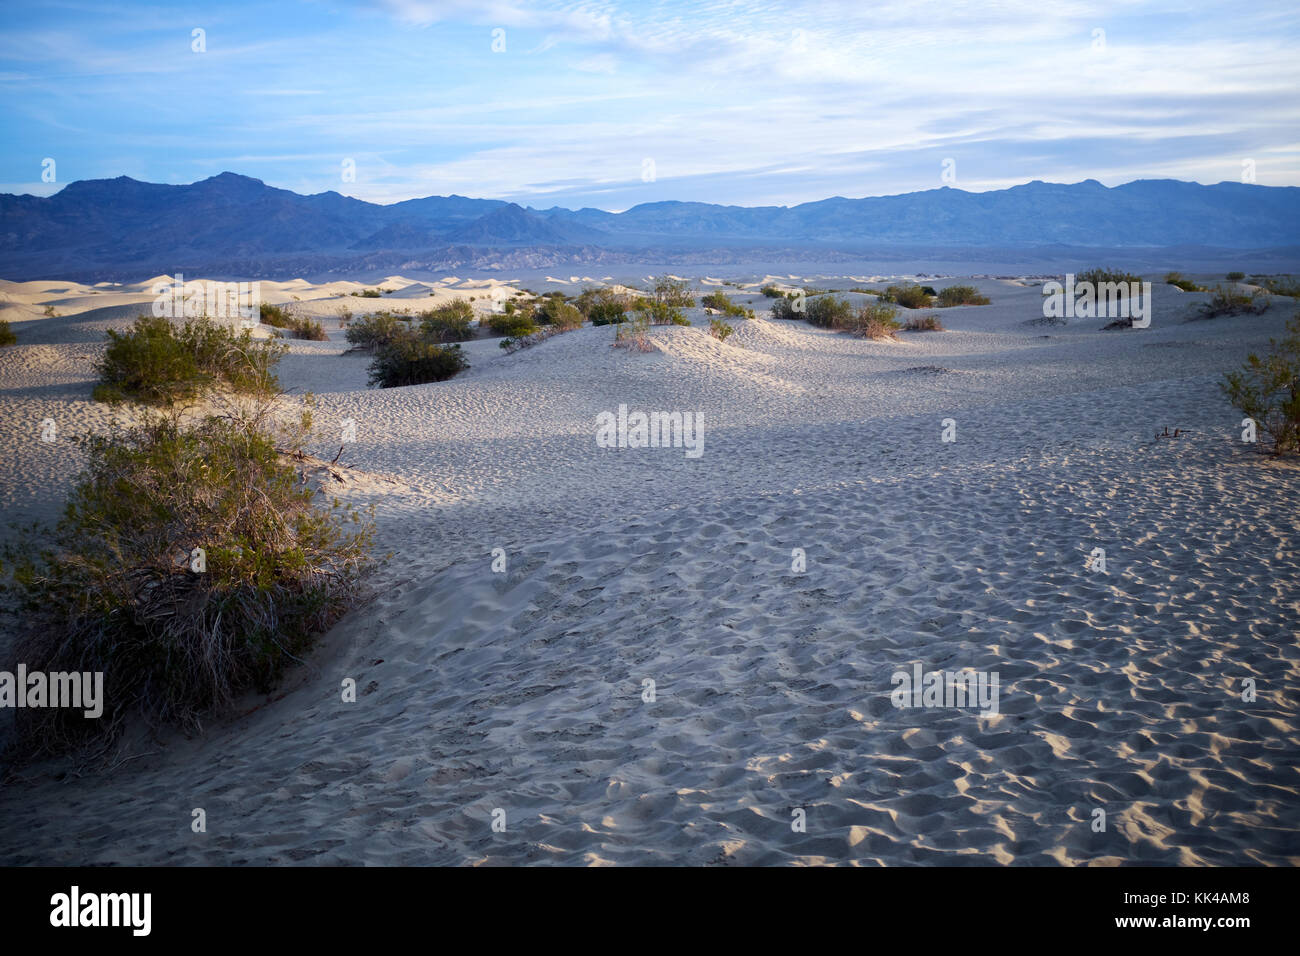 Sabbia arido paesaggio della valle della morte, Nevada, Stati Uniti d'America Foto Stock